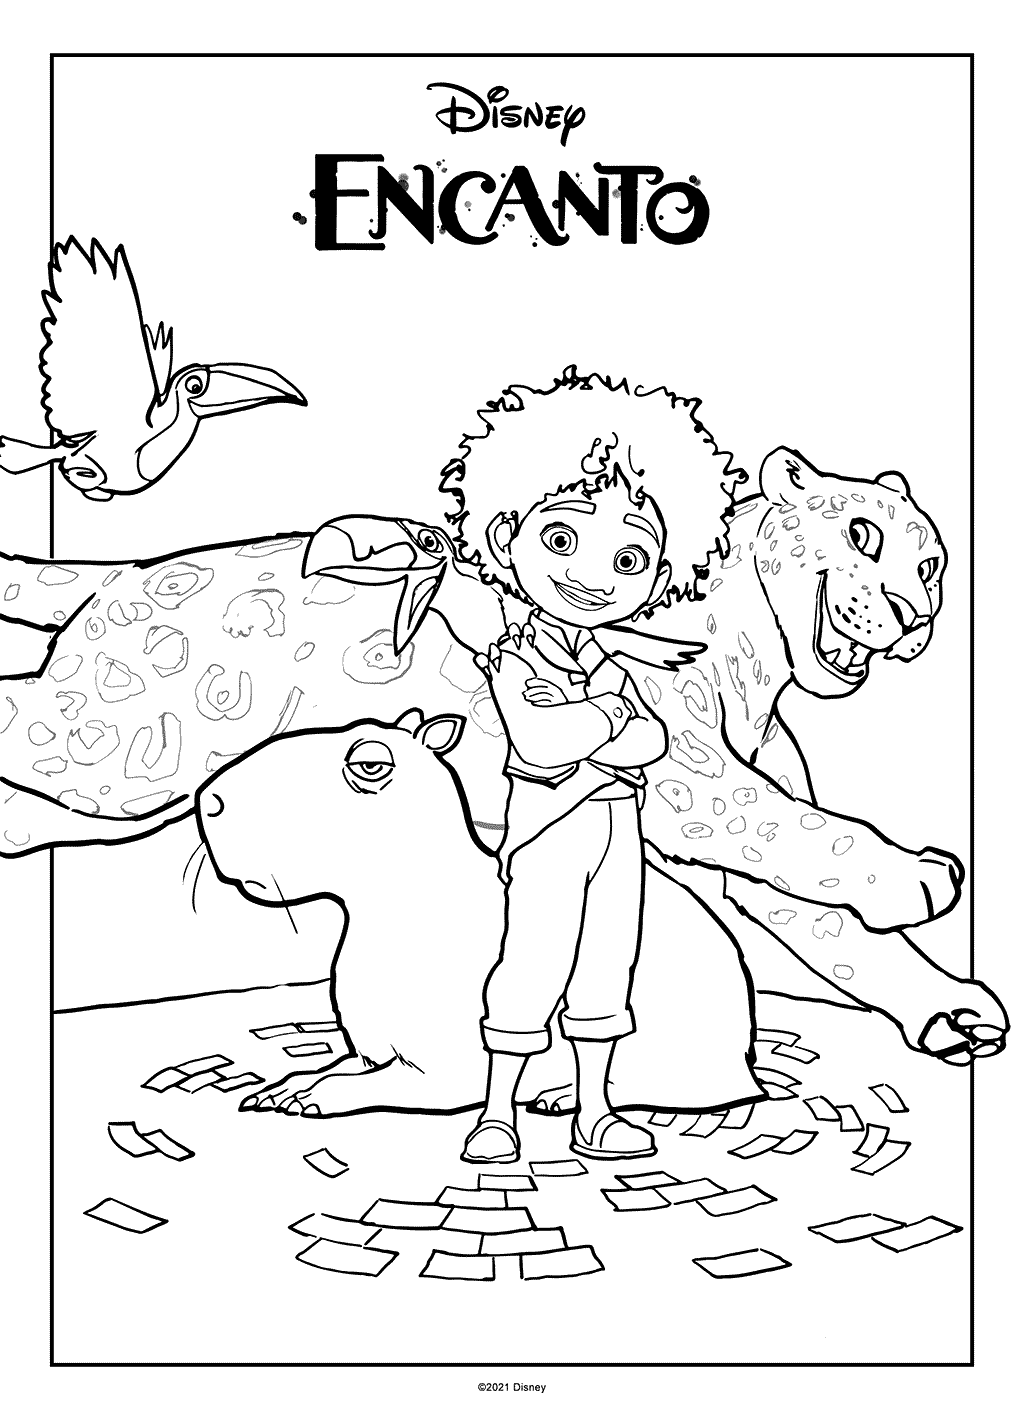 Antonio from Encanto coloring page